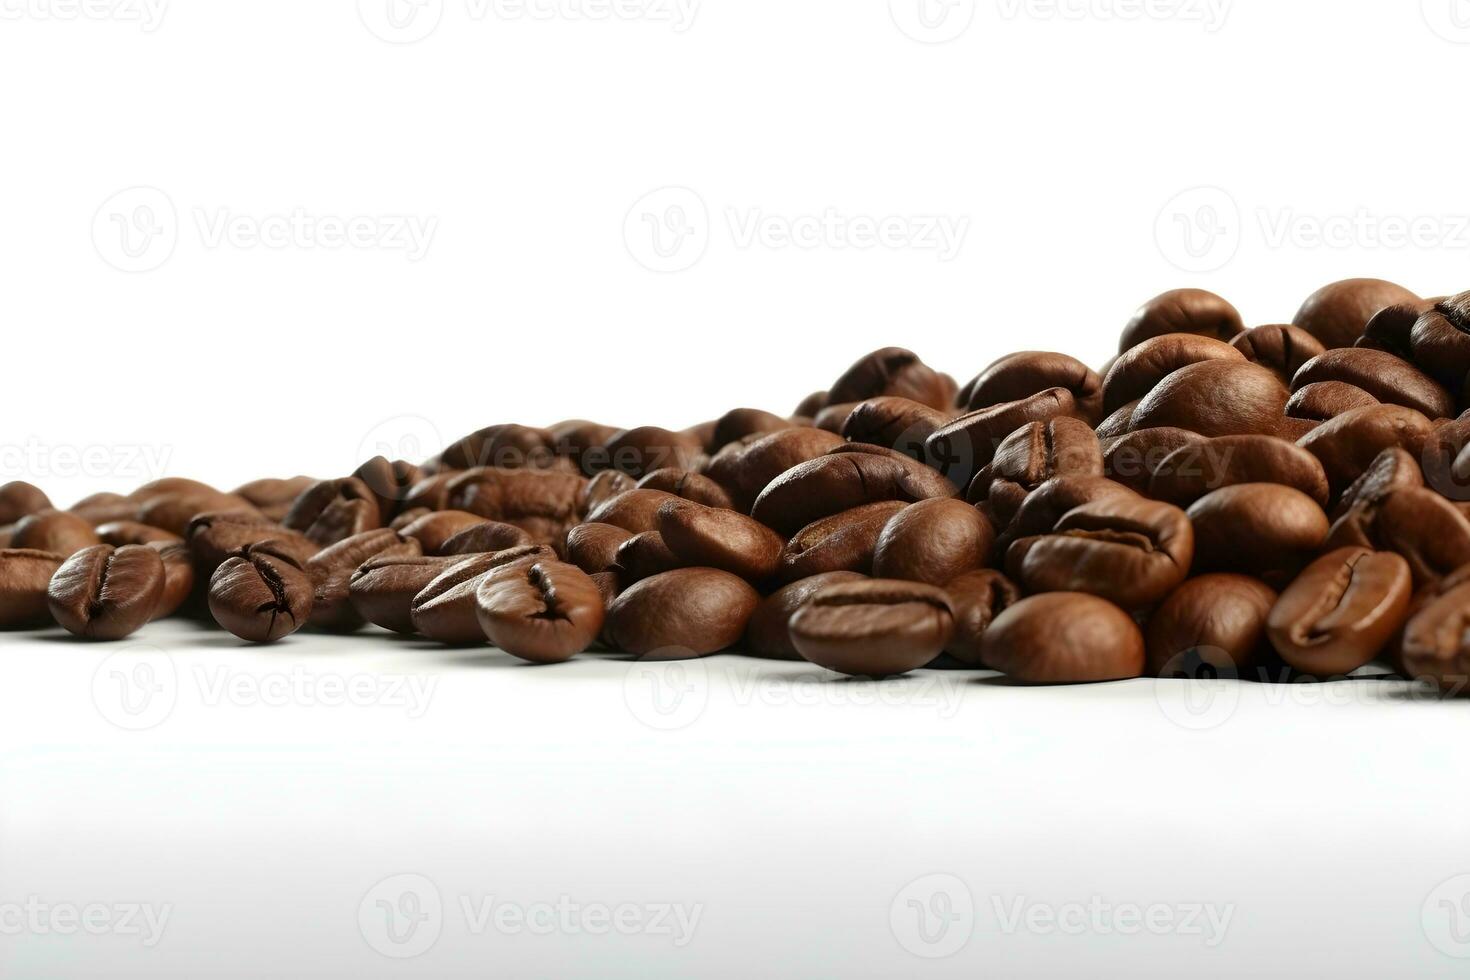 grãos de café, isolados no fundo branco foto